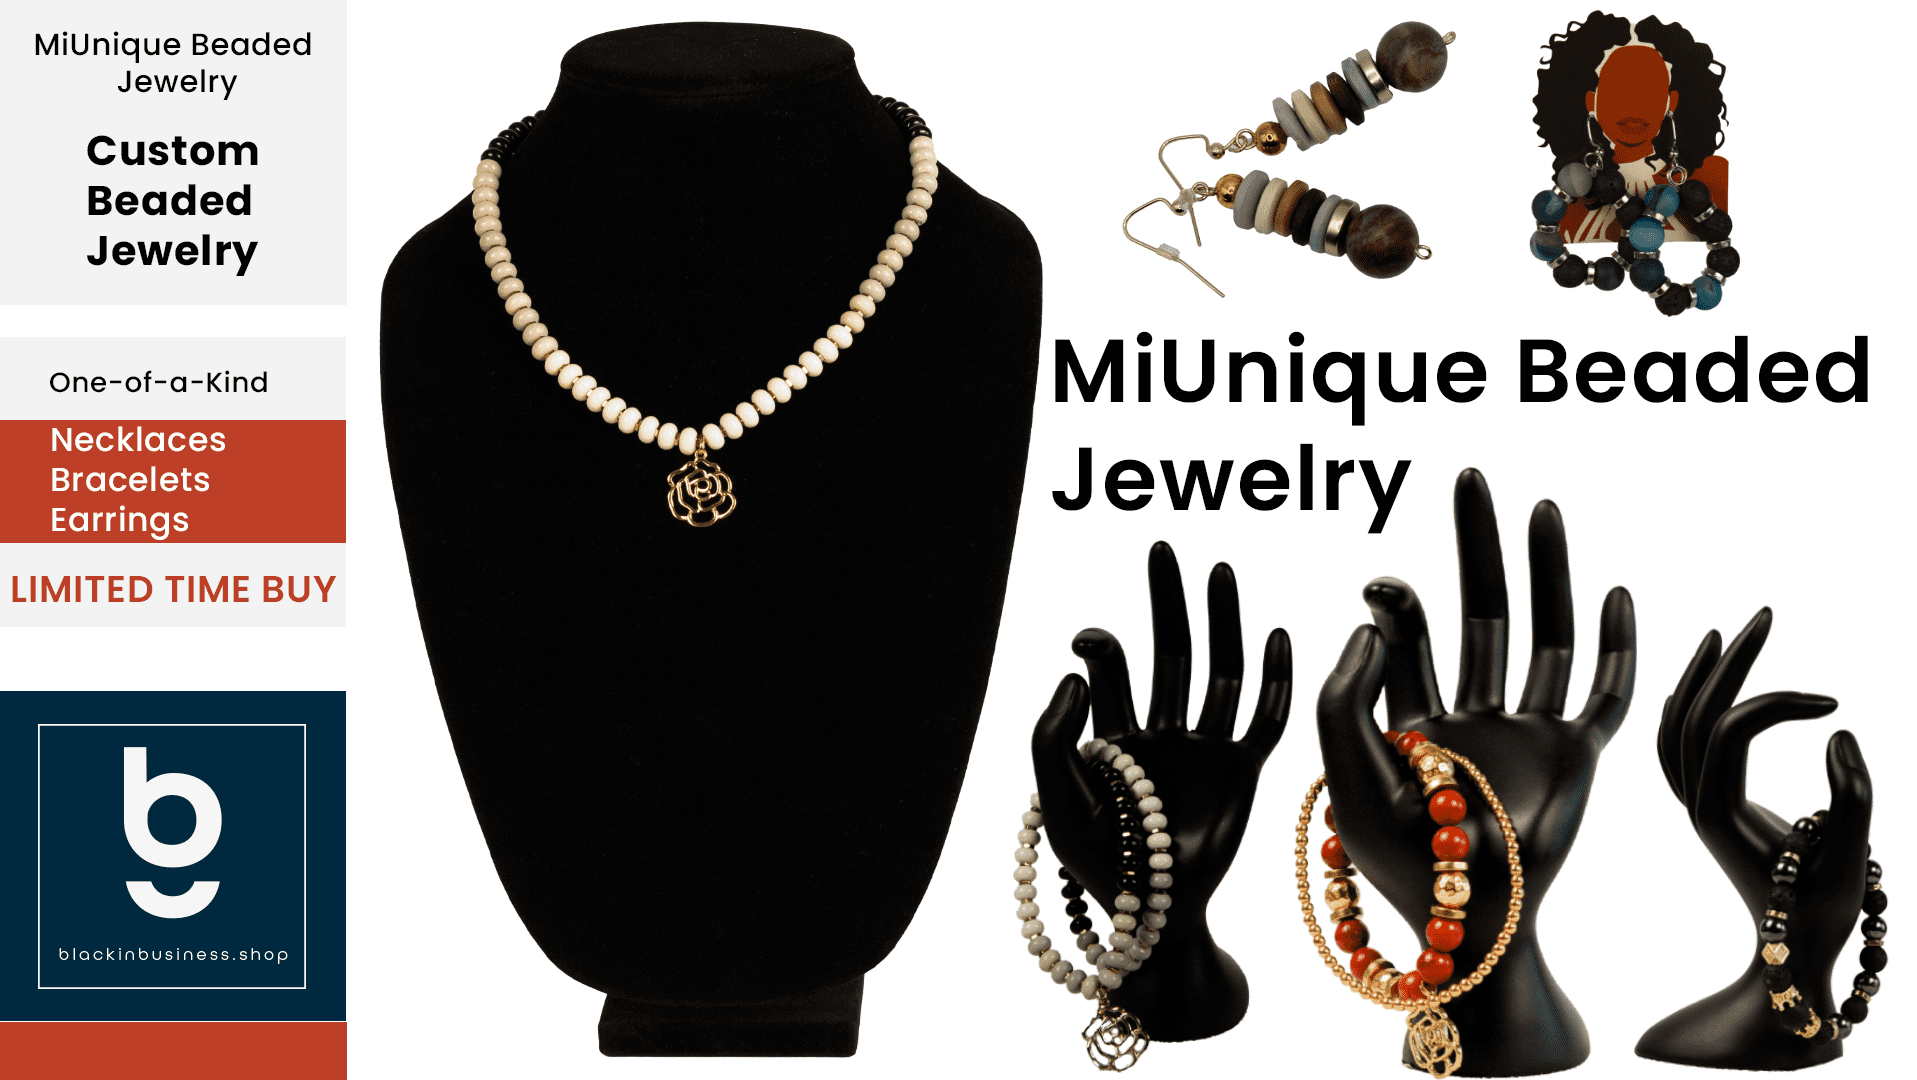 MiUnique Beaded Jewelry